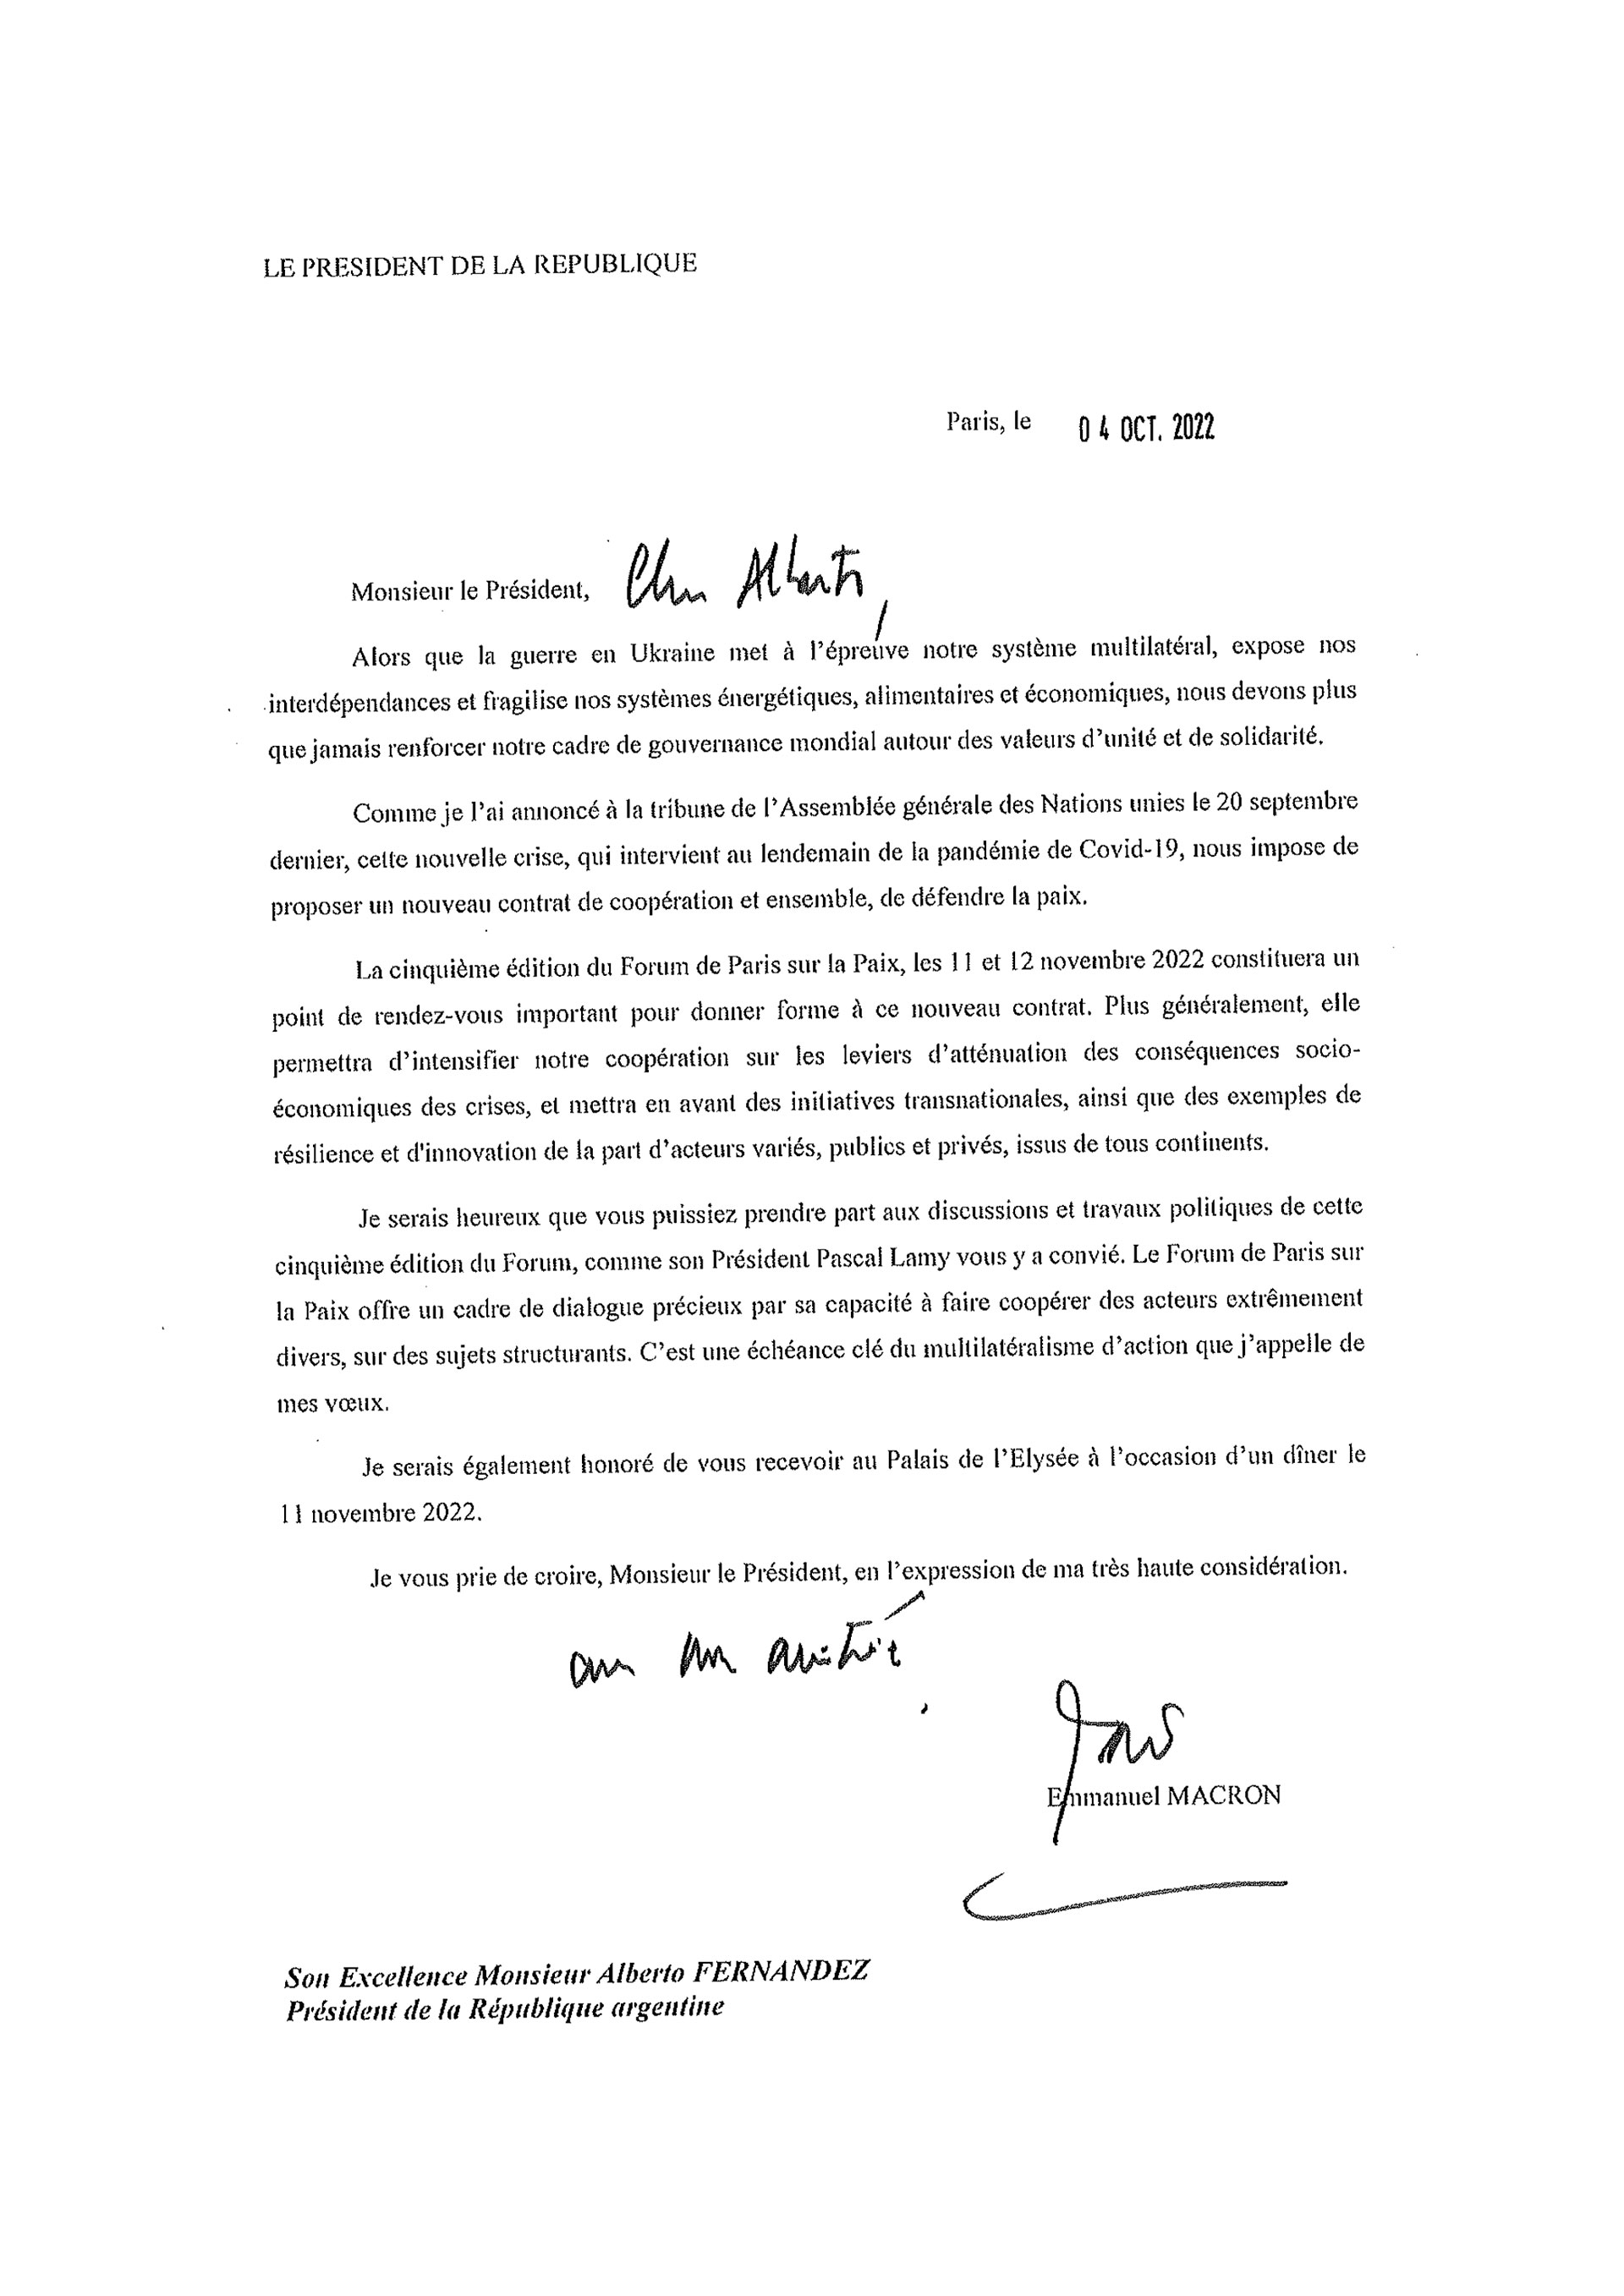 Facsímil de la carta enviada por Macron a Alberto Fernández para invitarlo al Foro de París por la Paz